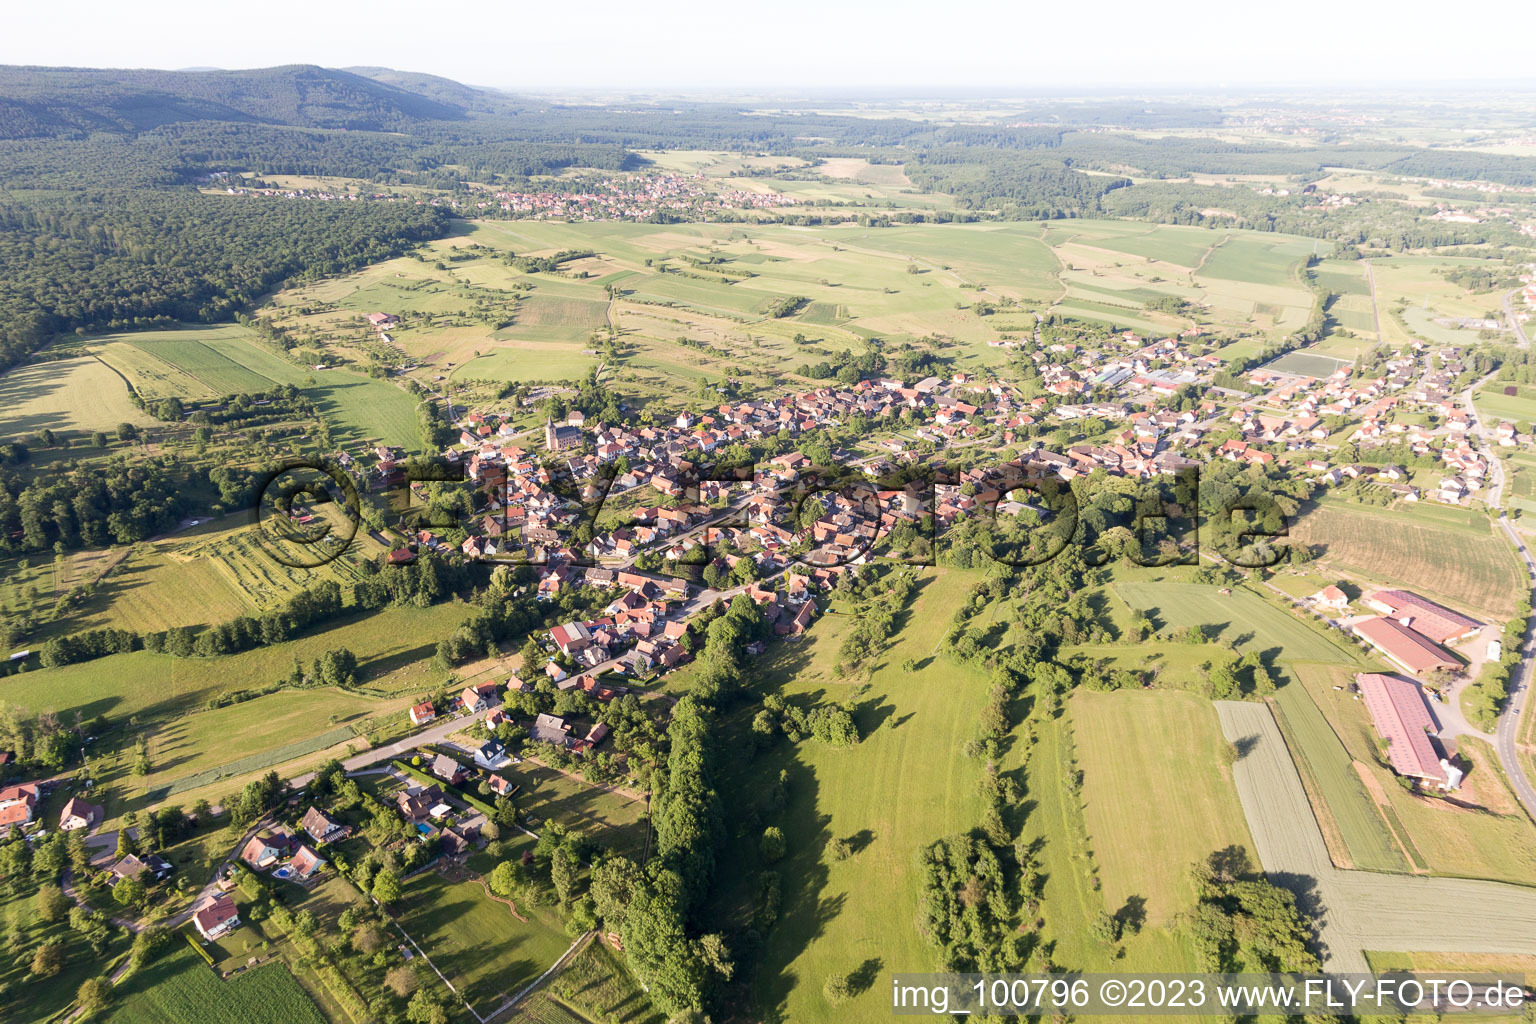 Preuschdorf dans le département Bas Rhin, France du point de vue du drone